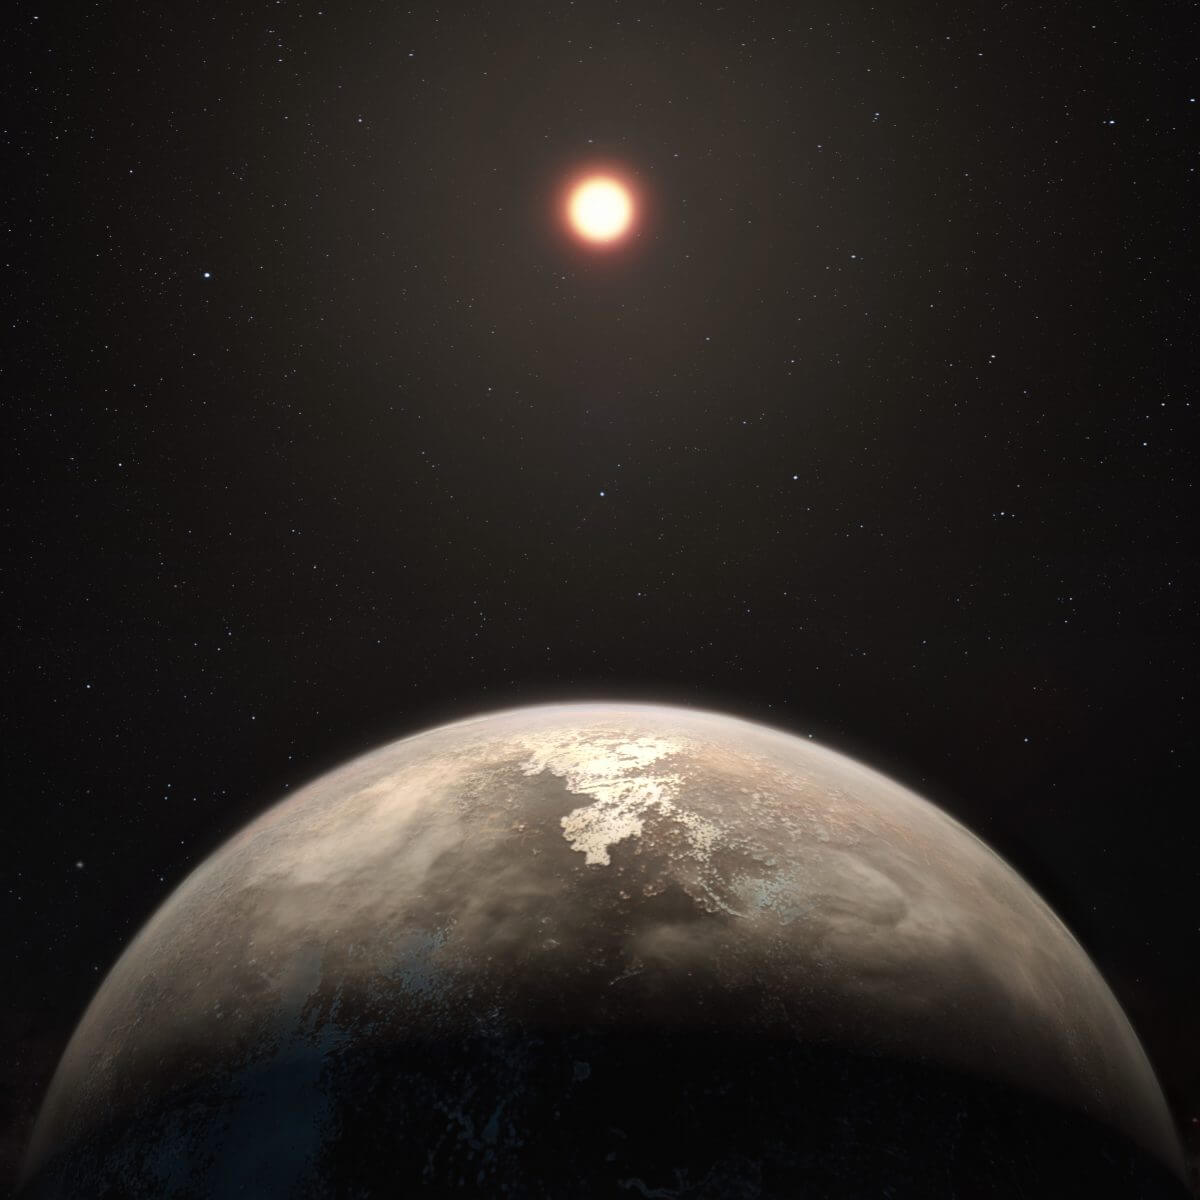 系外惑星「ロス128b」（下）を描いた想像図（Credit: ESO/M. Kornmesser）